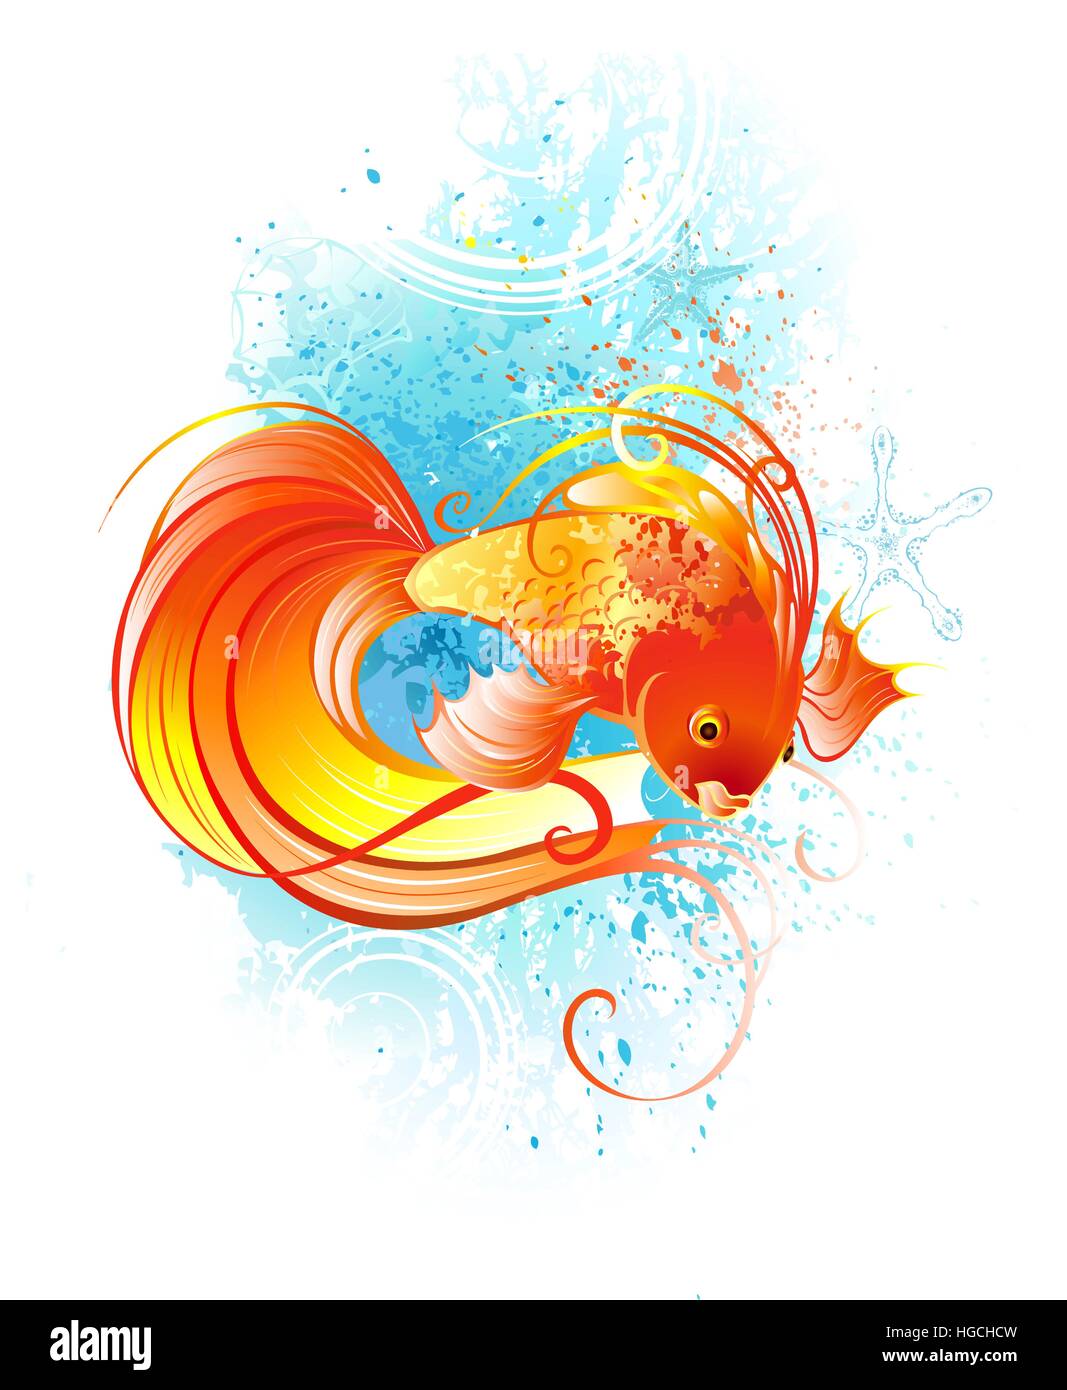 Rosso, artisticamente dipinte di pesce su uno sfondo bianco con corallo blu. Illustrazione Vettoriale